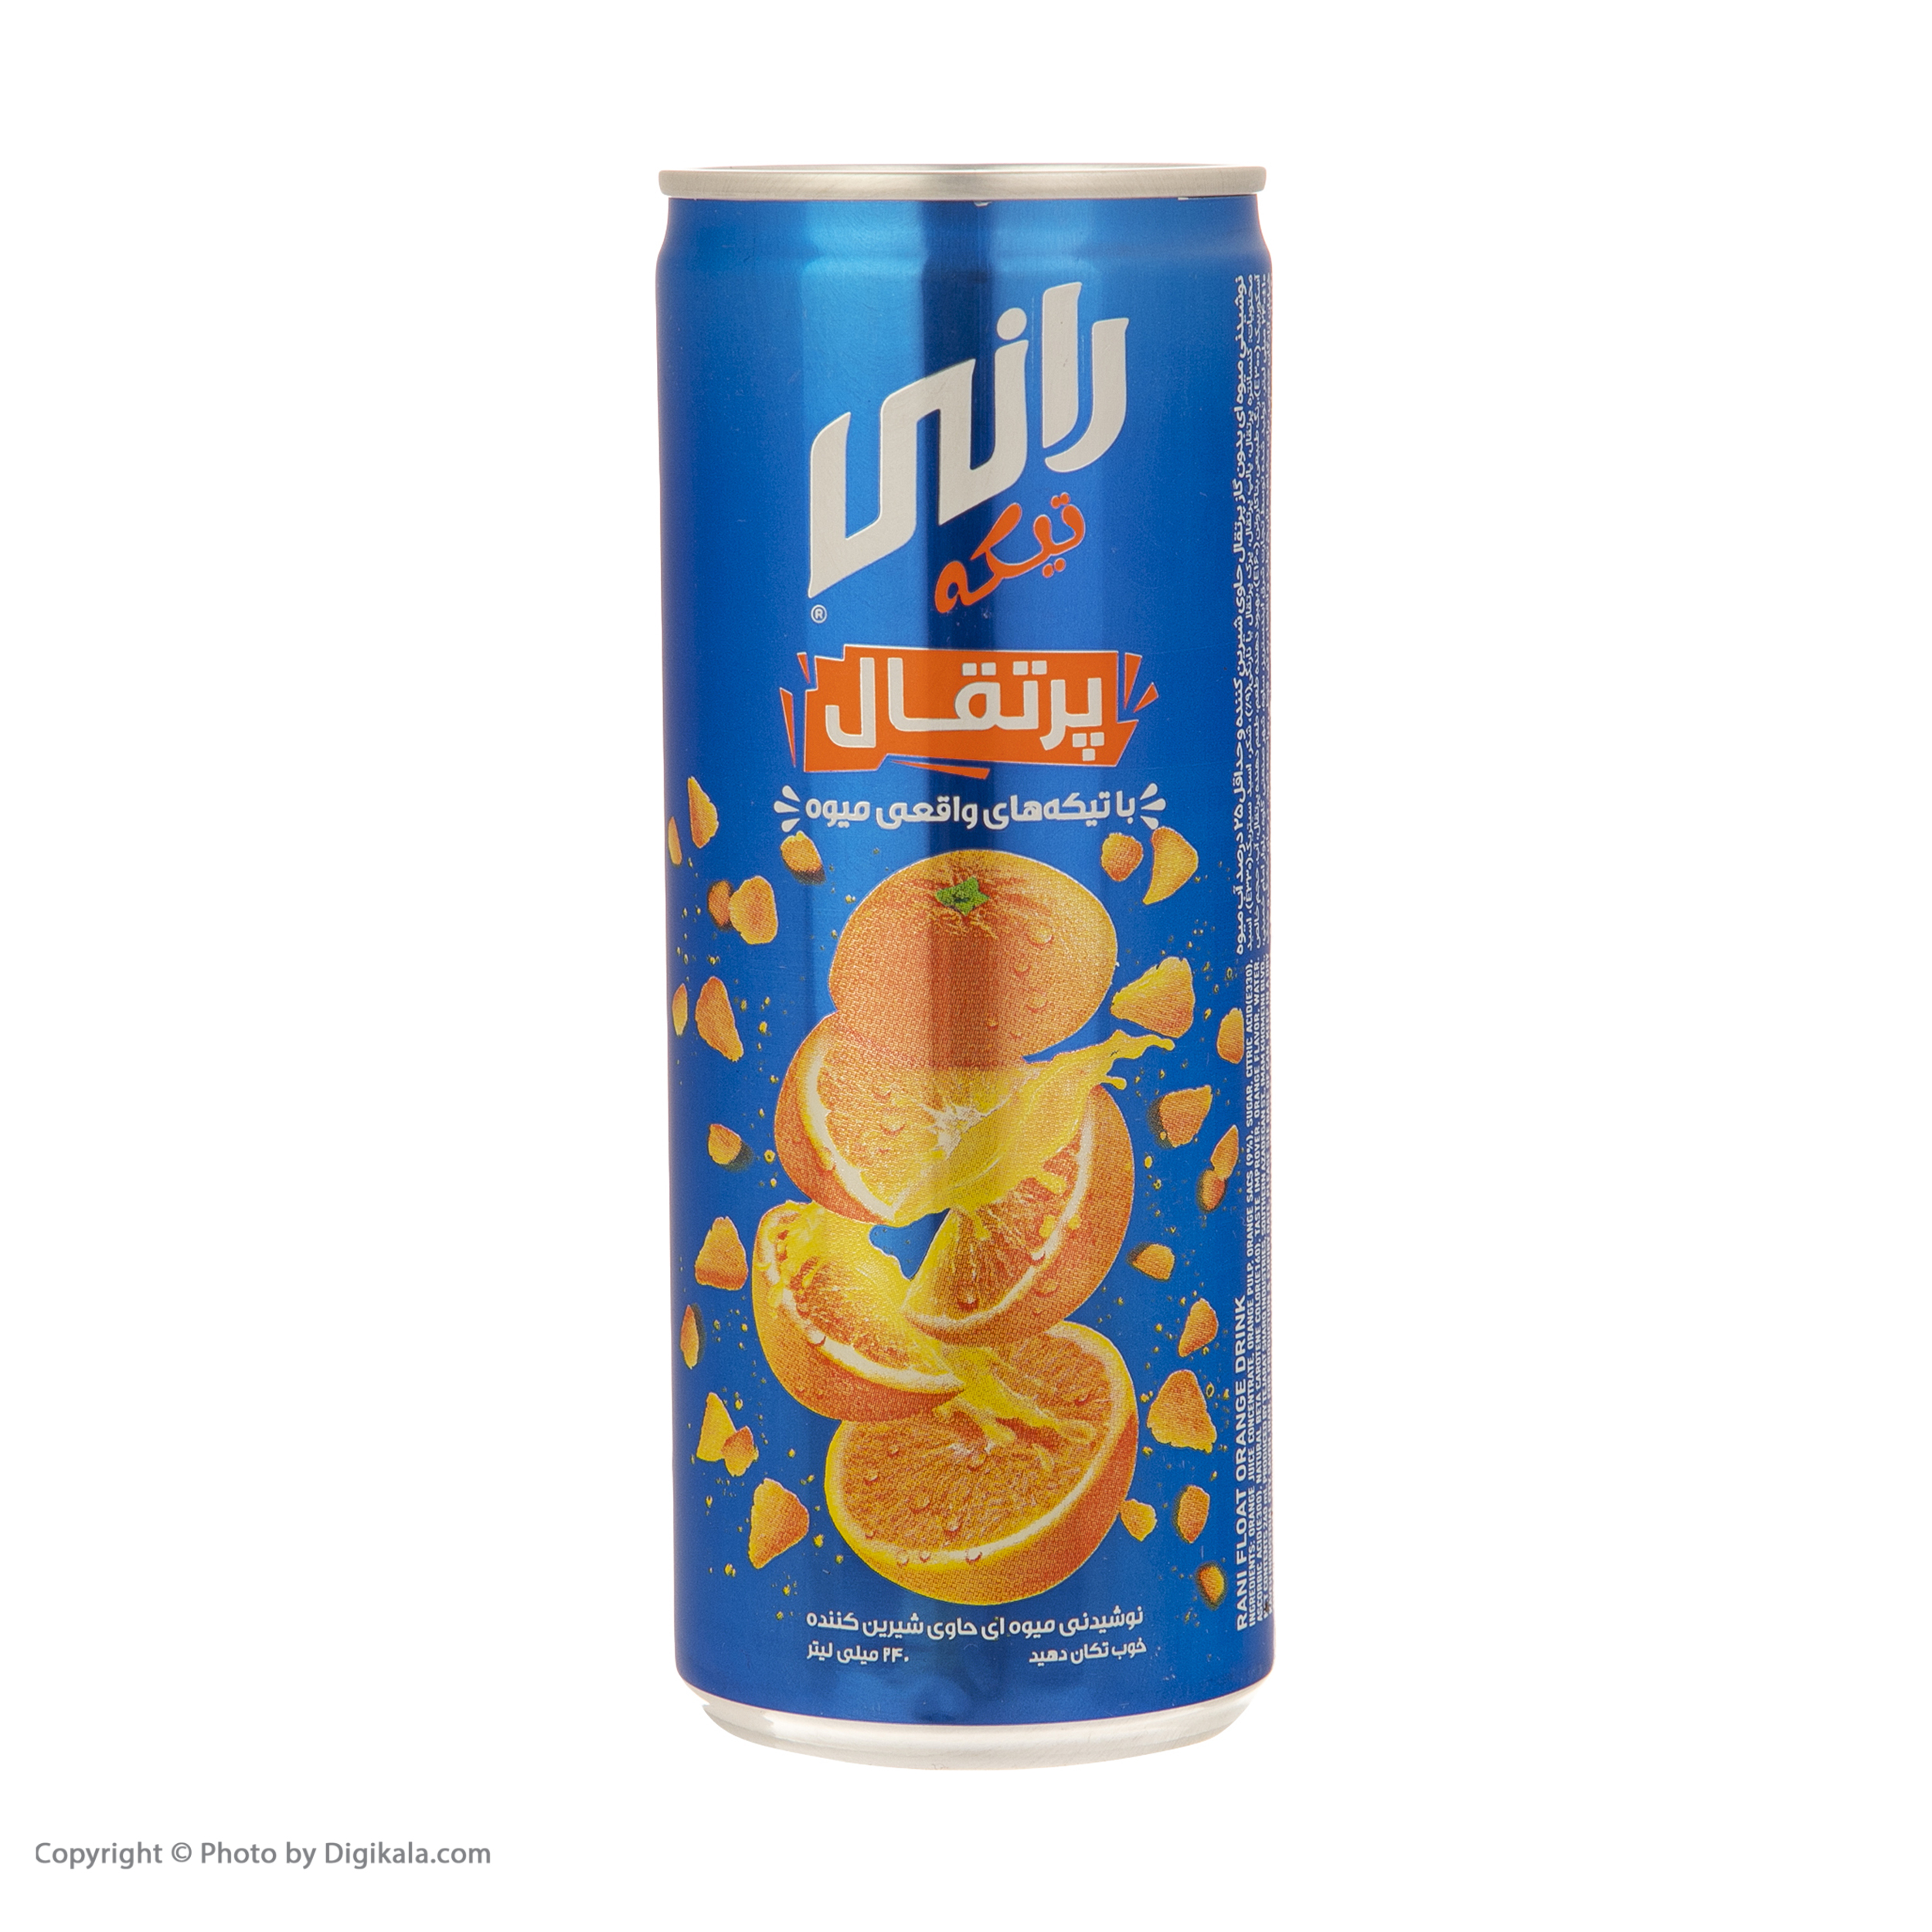 نوشیدنی پرتقال رانی حاوی تیکه های واقعی میوه - 240 میلی لیتر